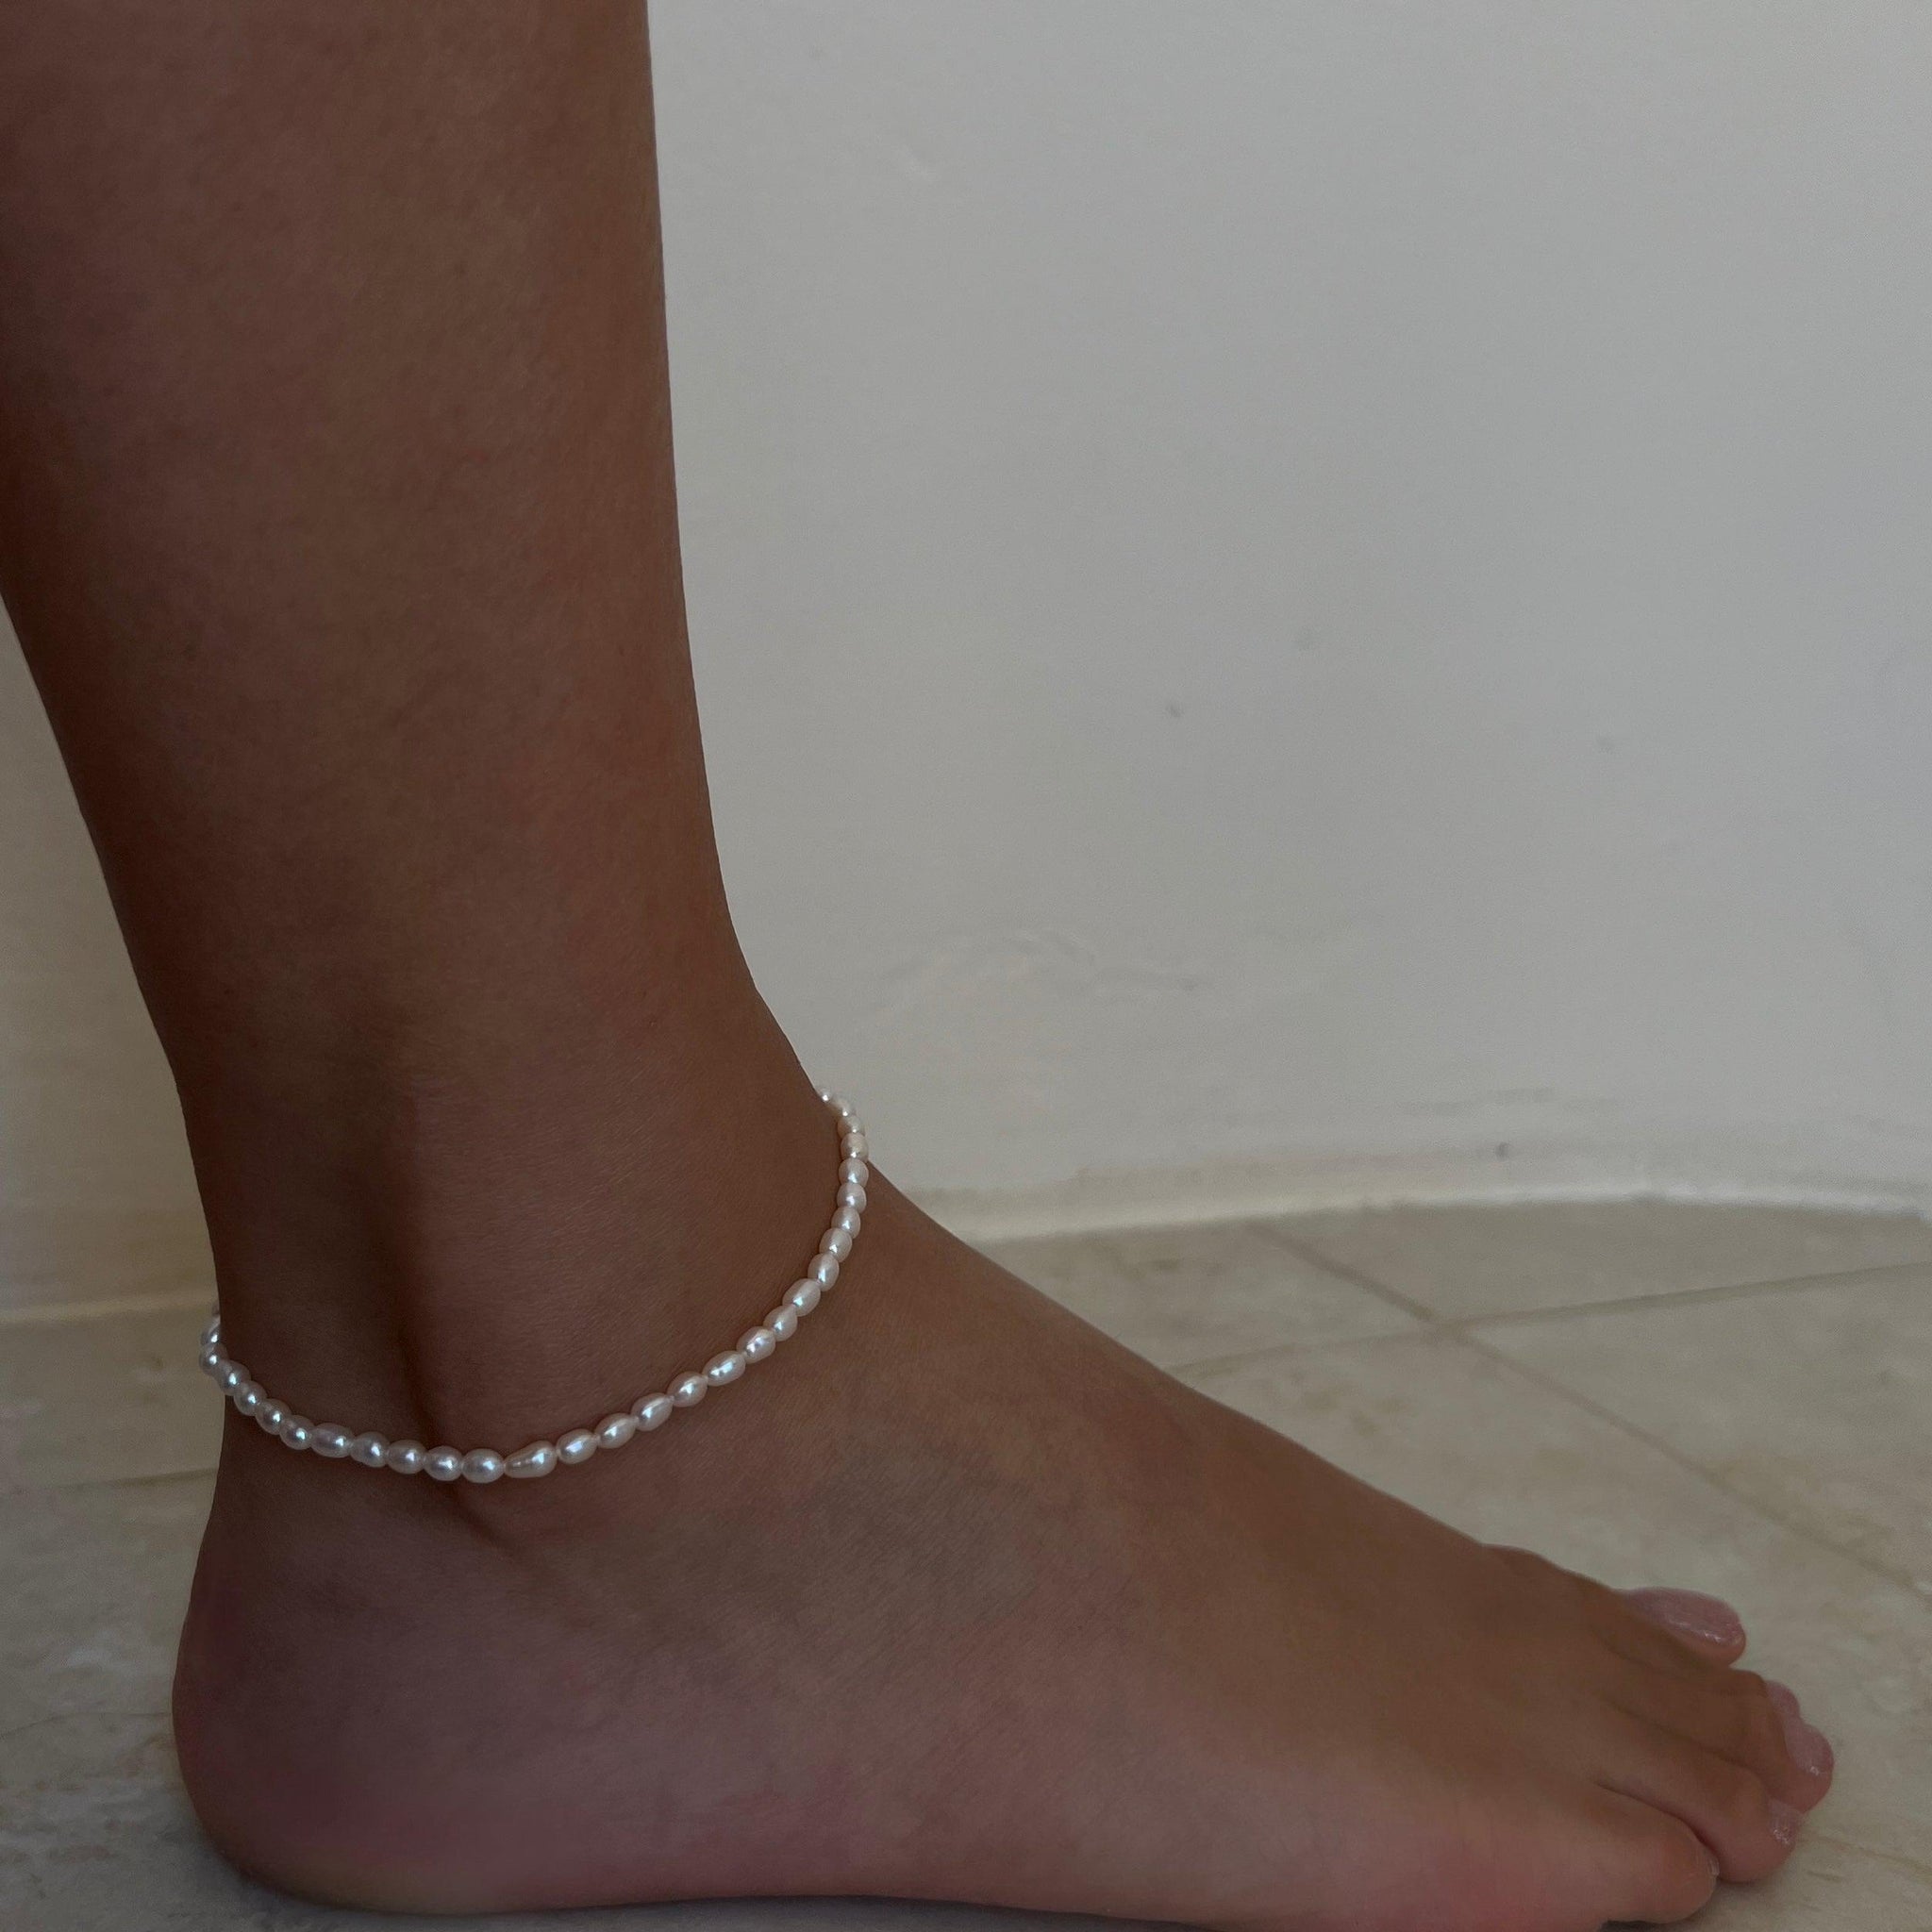 – R & O E A Anklets ® Y L I Bracelets S